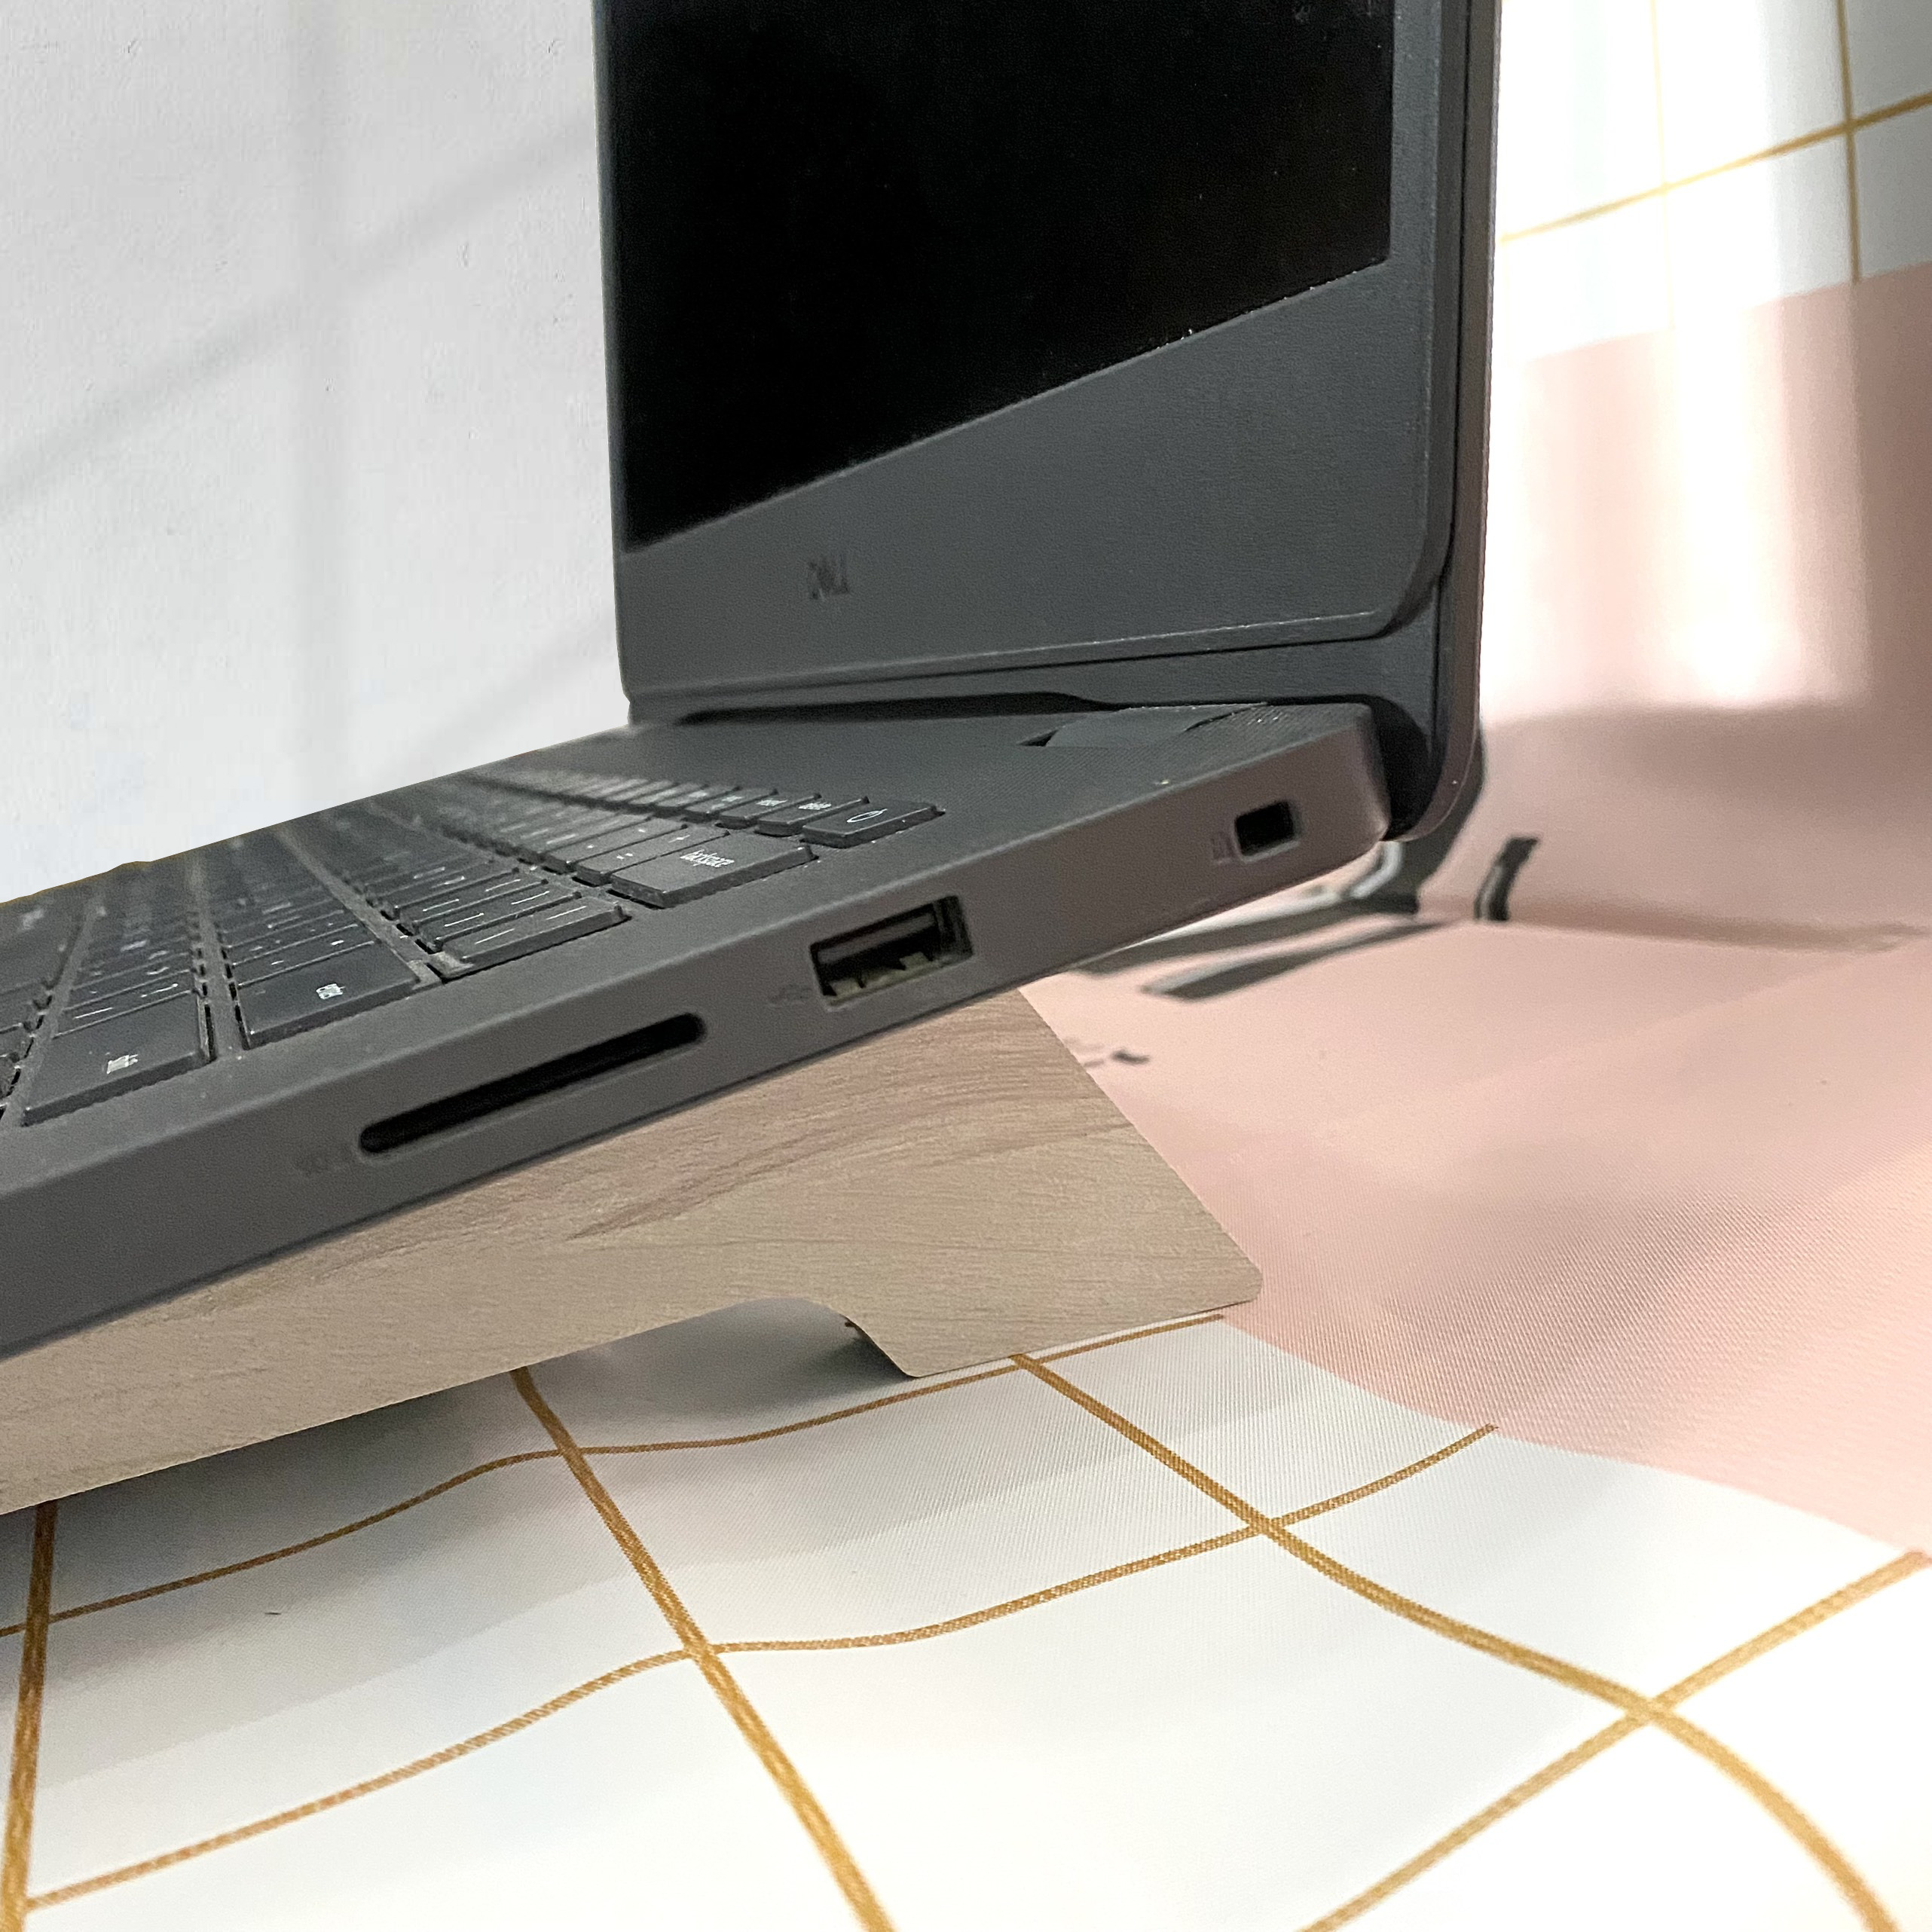 Giá đỡ laptop, máy tính tản nhiệt bằng gỗ MDF chống thấp cao cấp giá rẻ